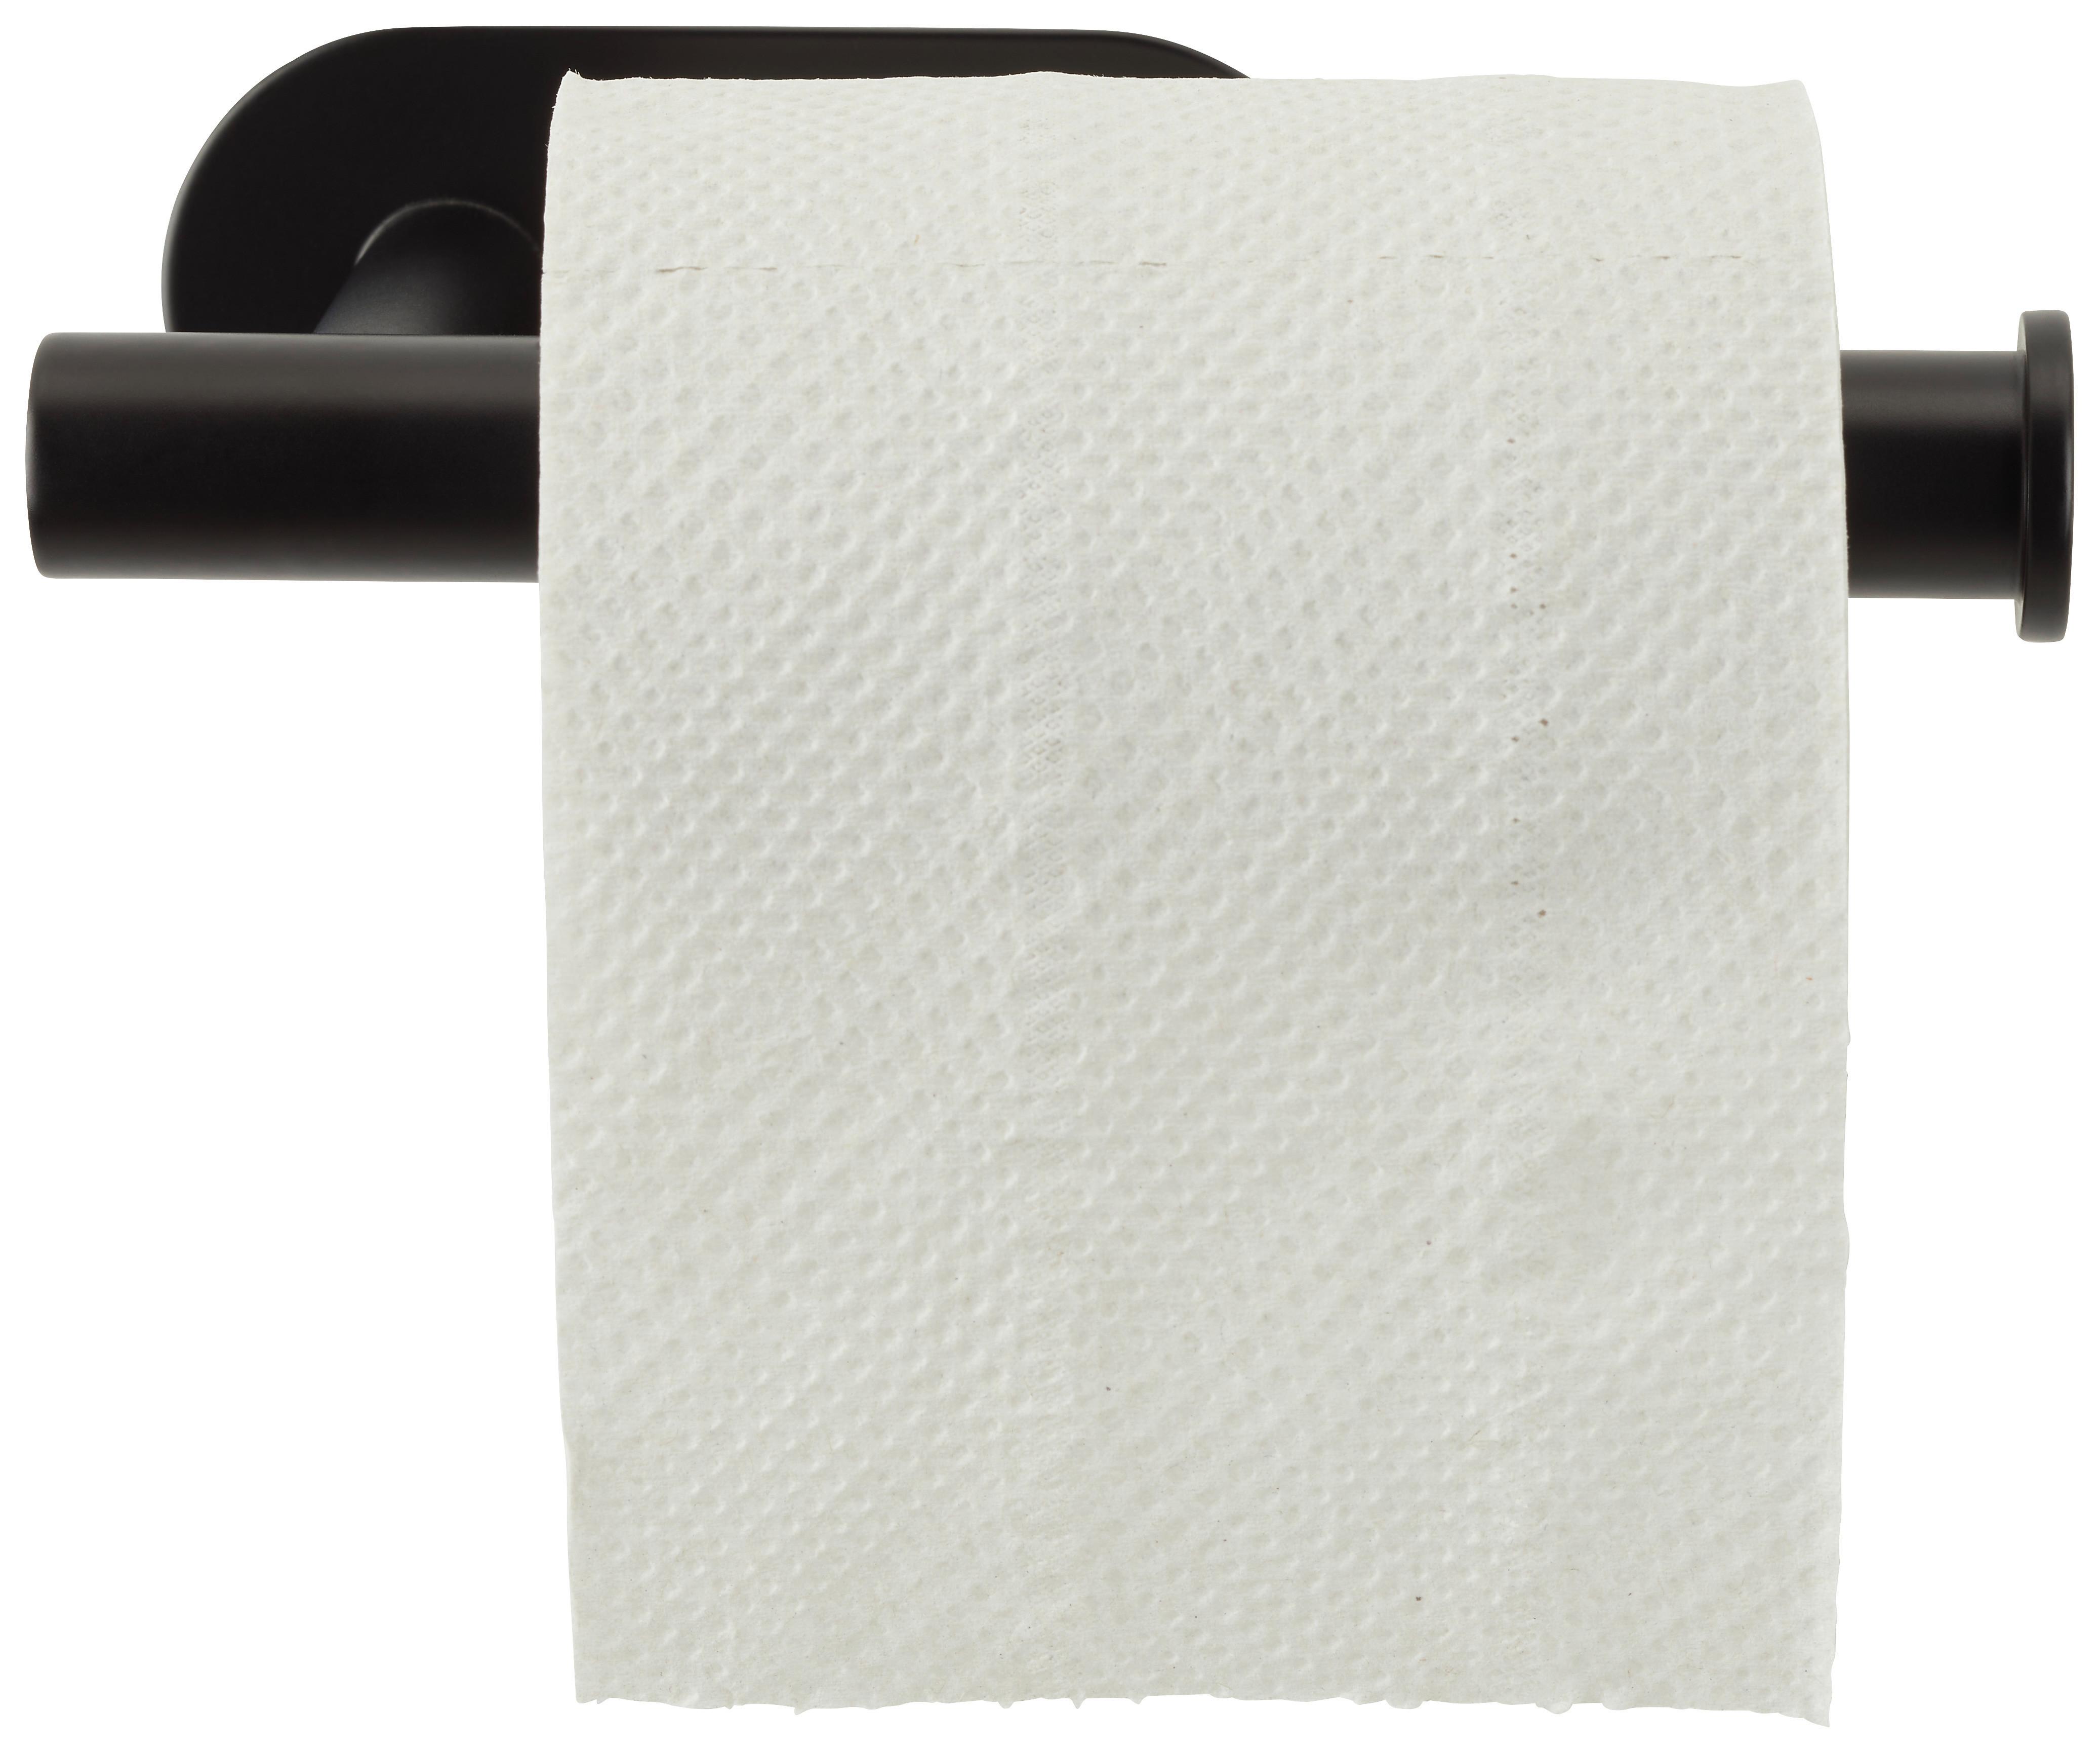 Držák Na Toaletní Papír Vyrobeno Z Kovu V Černé - černá, Moderní, kov (16/4,5/7cm) - Modern Living